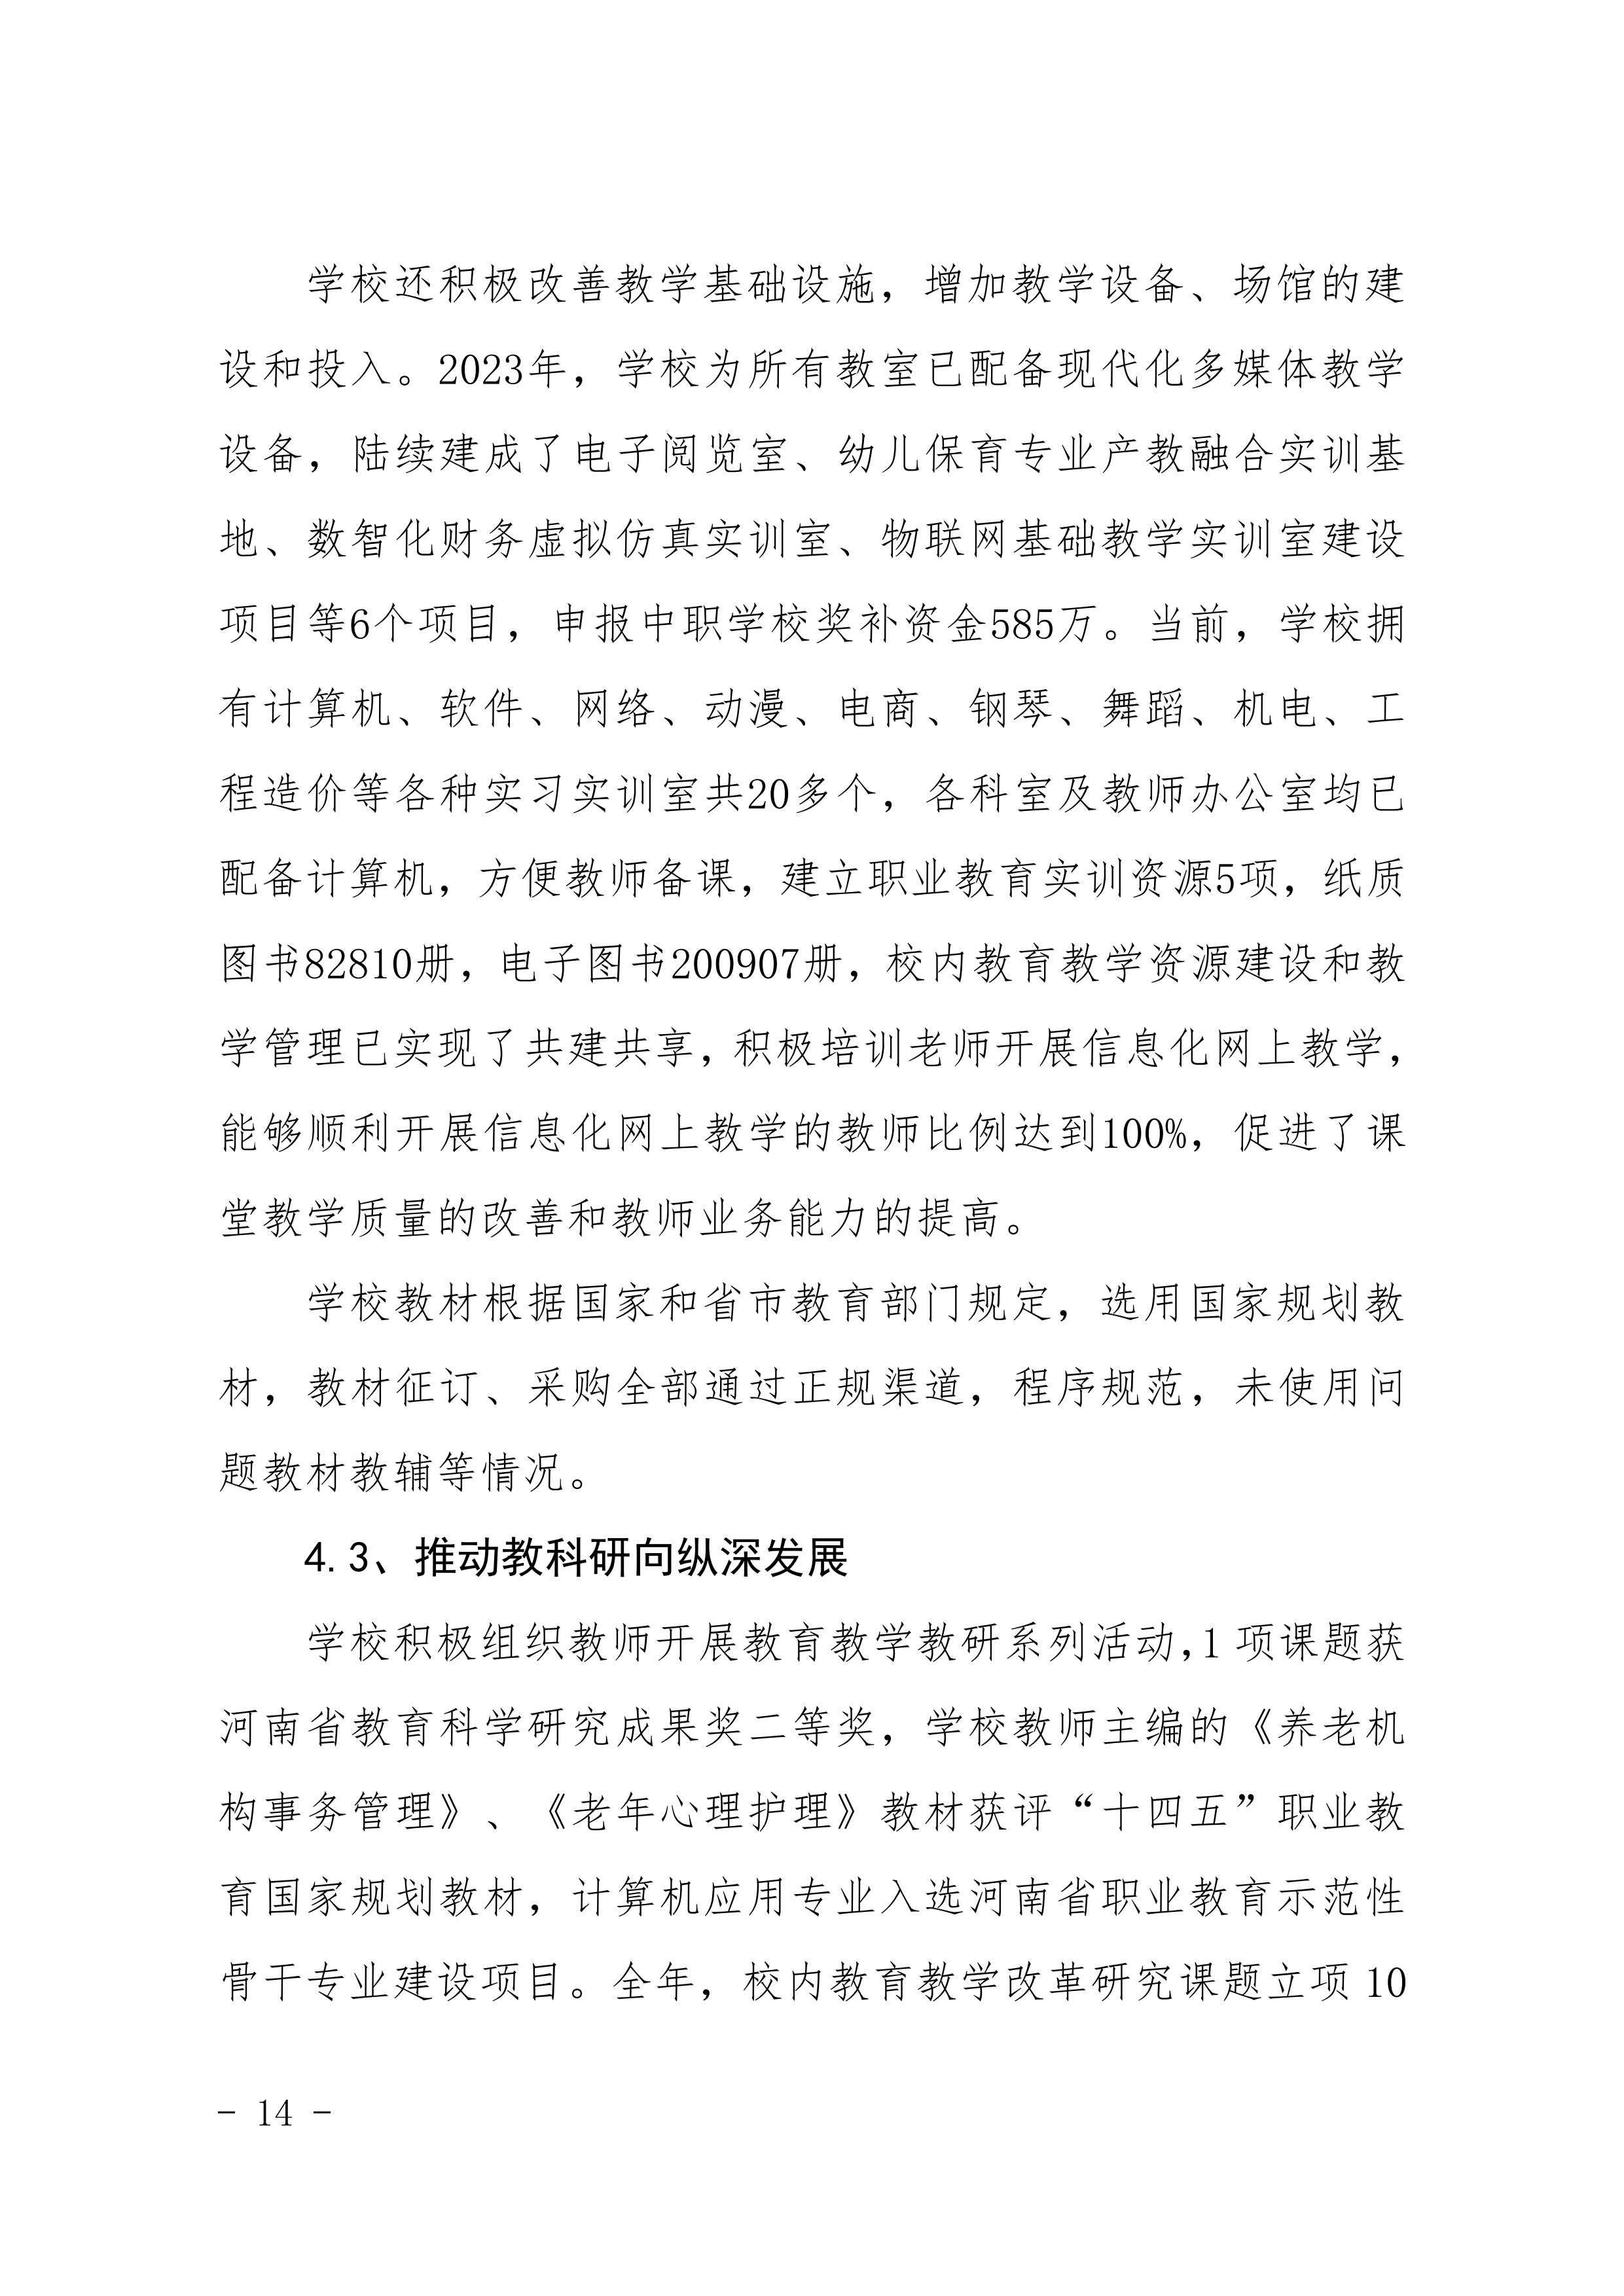 河南省民政学校职业教育质量报告（2023年度）发布版_17.jpg